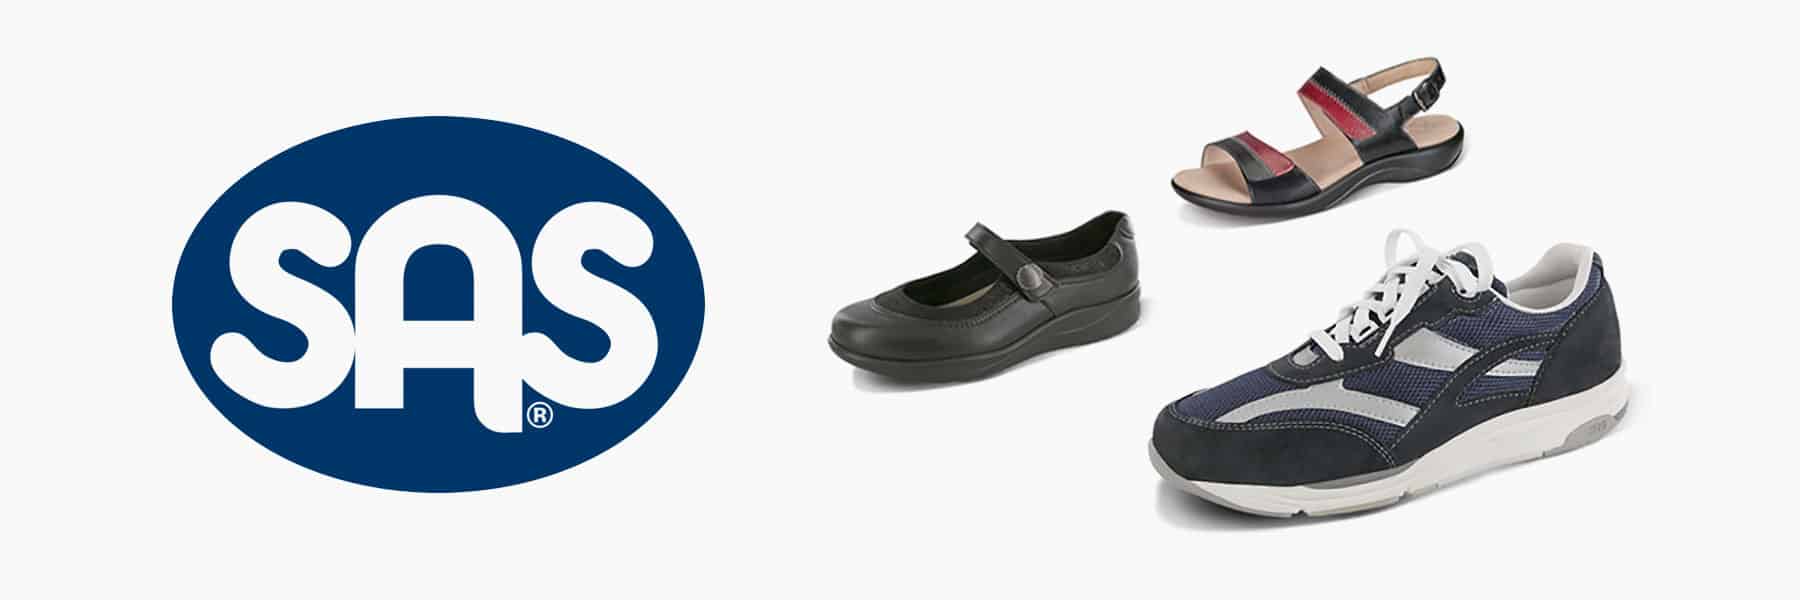 SAS Shoes Logo - SAS Shoes, SAS Shoes for Women, SAS Shoes